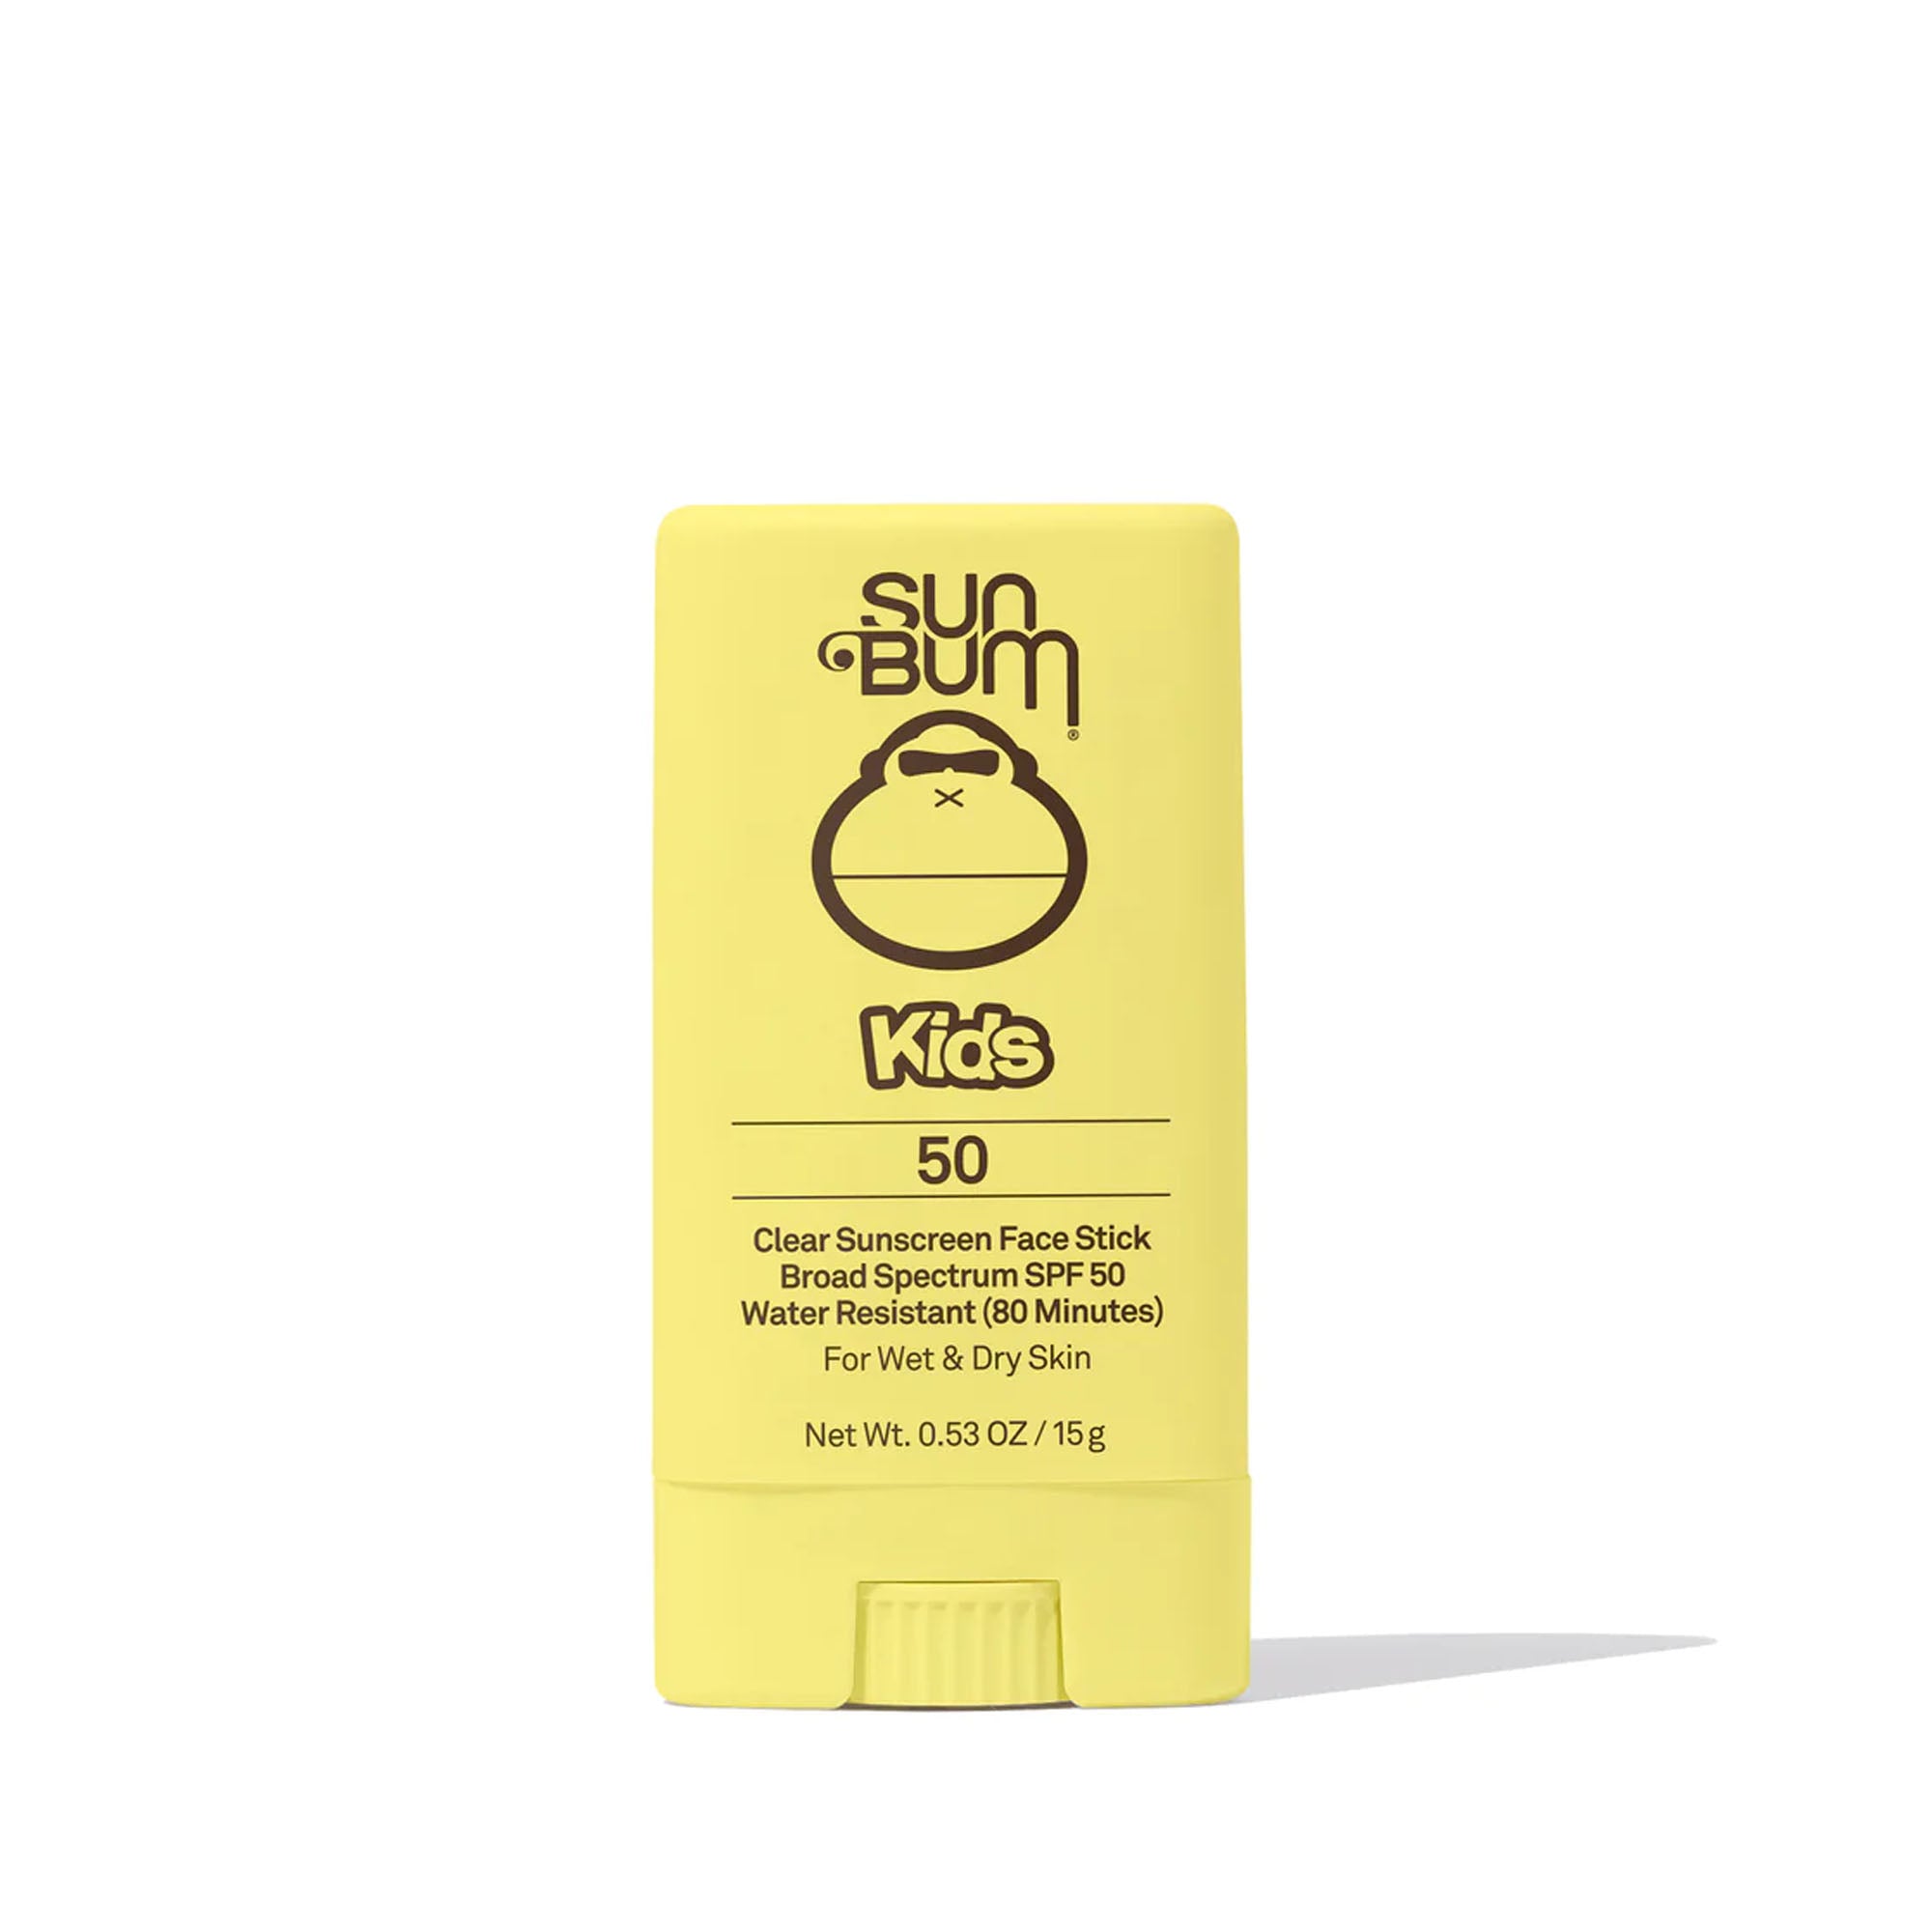 Sun Bum Kids Sunscreen SPF 50 Face Stick